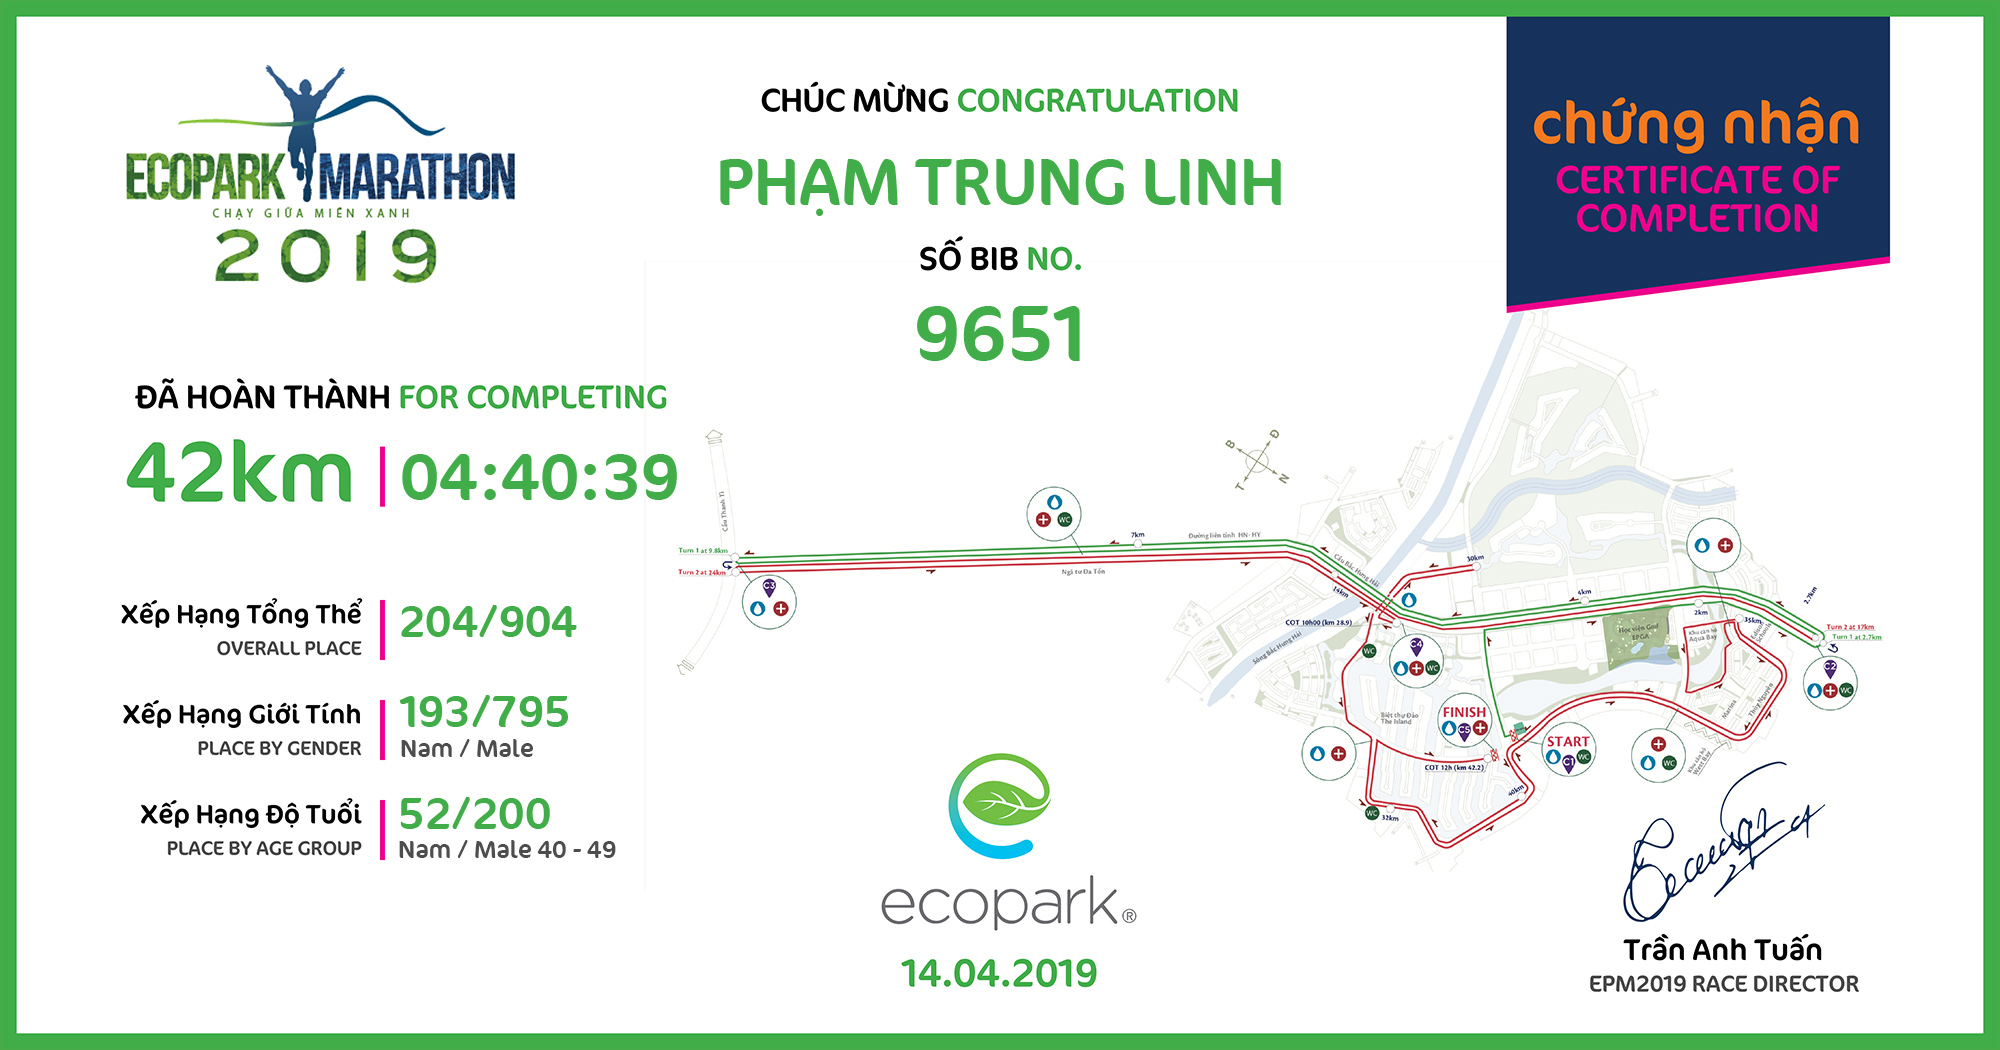 9651 - Phạm Trung Linh